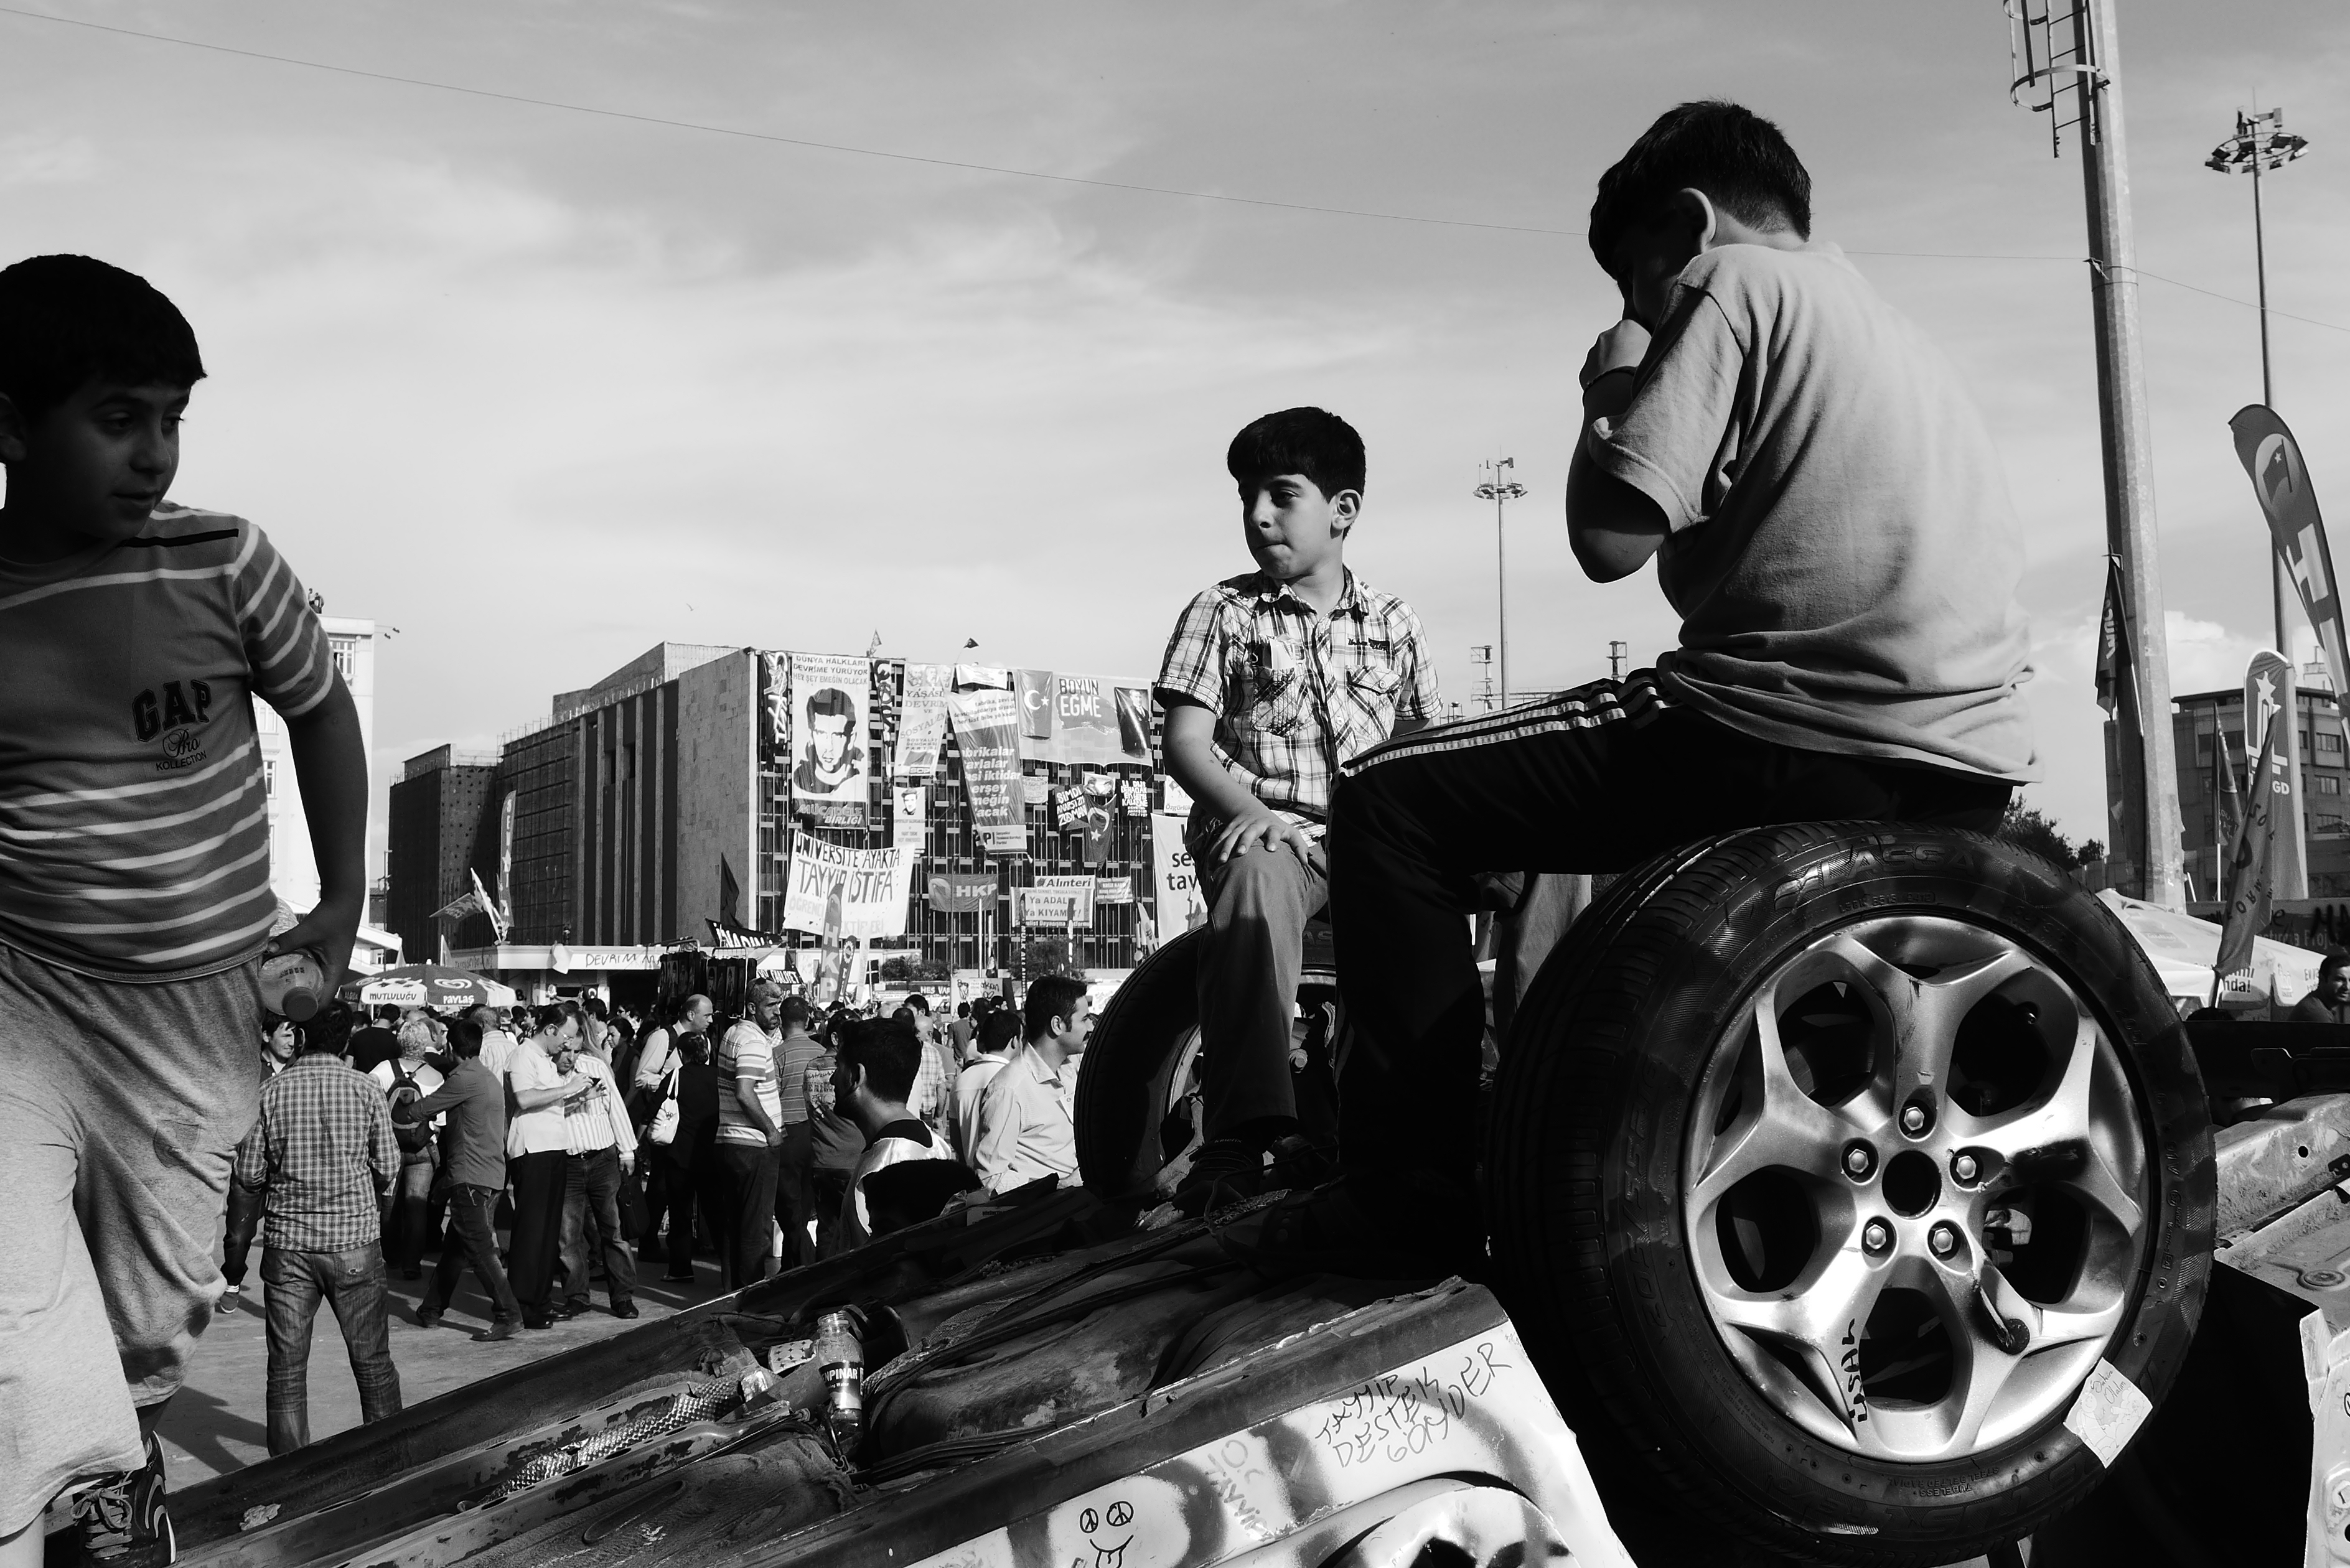 Trophäe des Widerstands: Kinder machen aus einem umgestürzten Polizeiwagen einen Abenteuerspielplatz